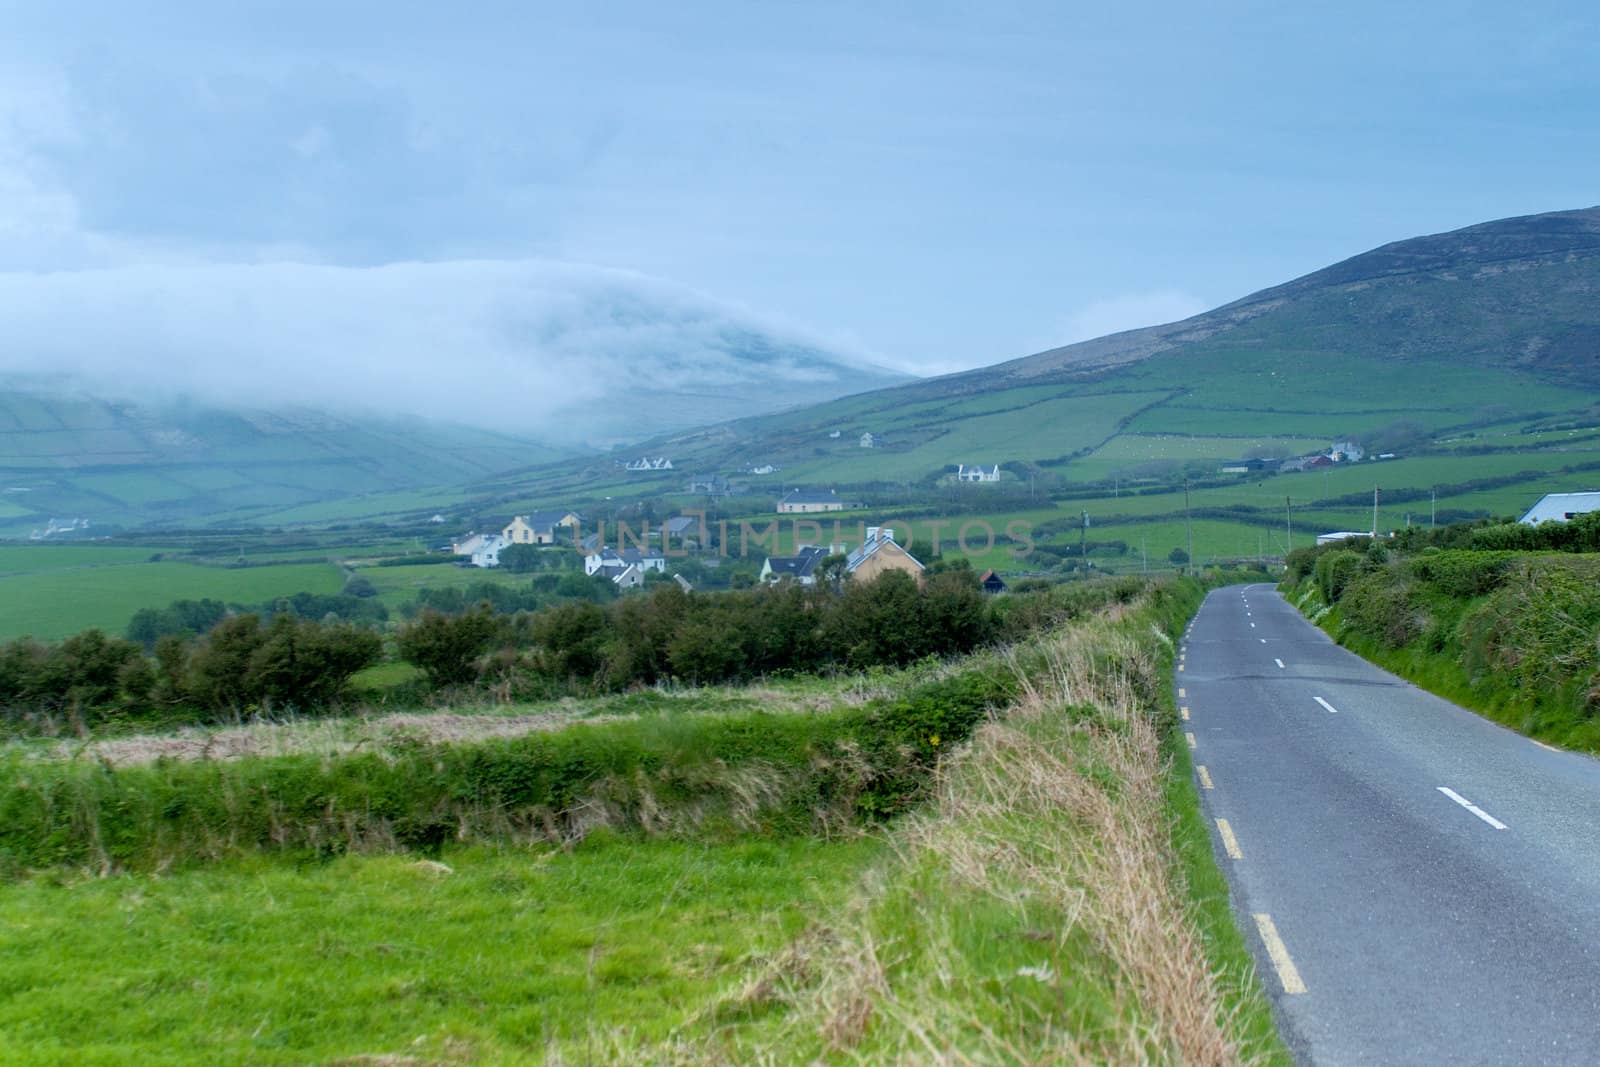 Road going through village in rural Ireland